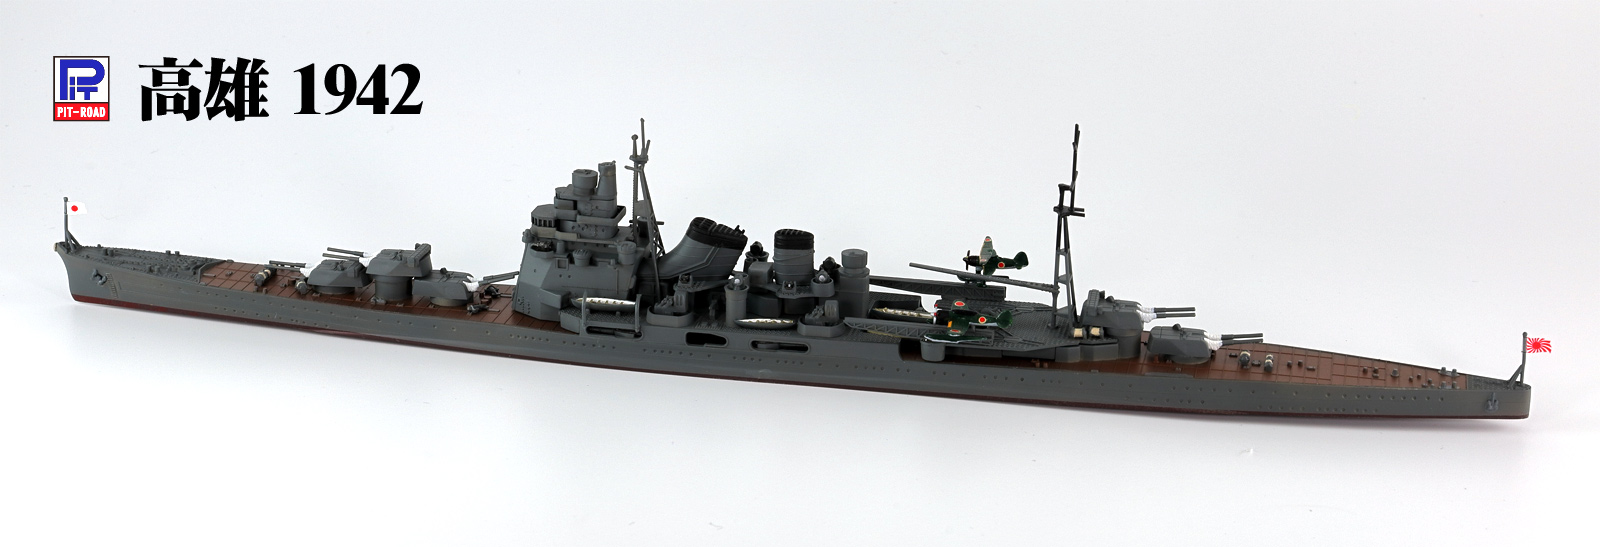 1/700 日本海軍 重巡洋艦 高雄 1944/1942 - ウインドウを閉じる